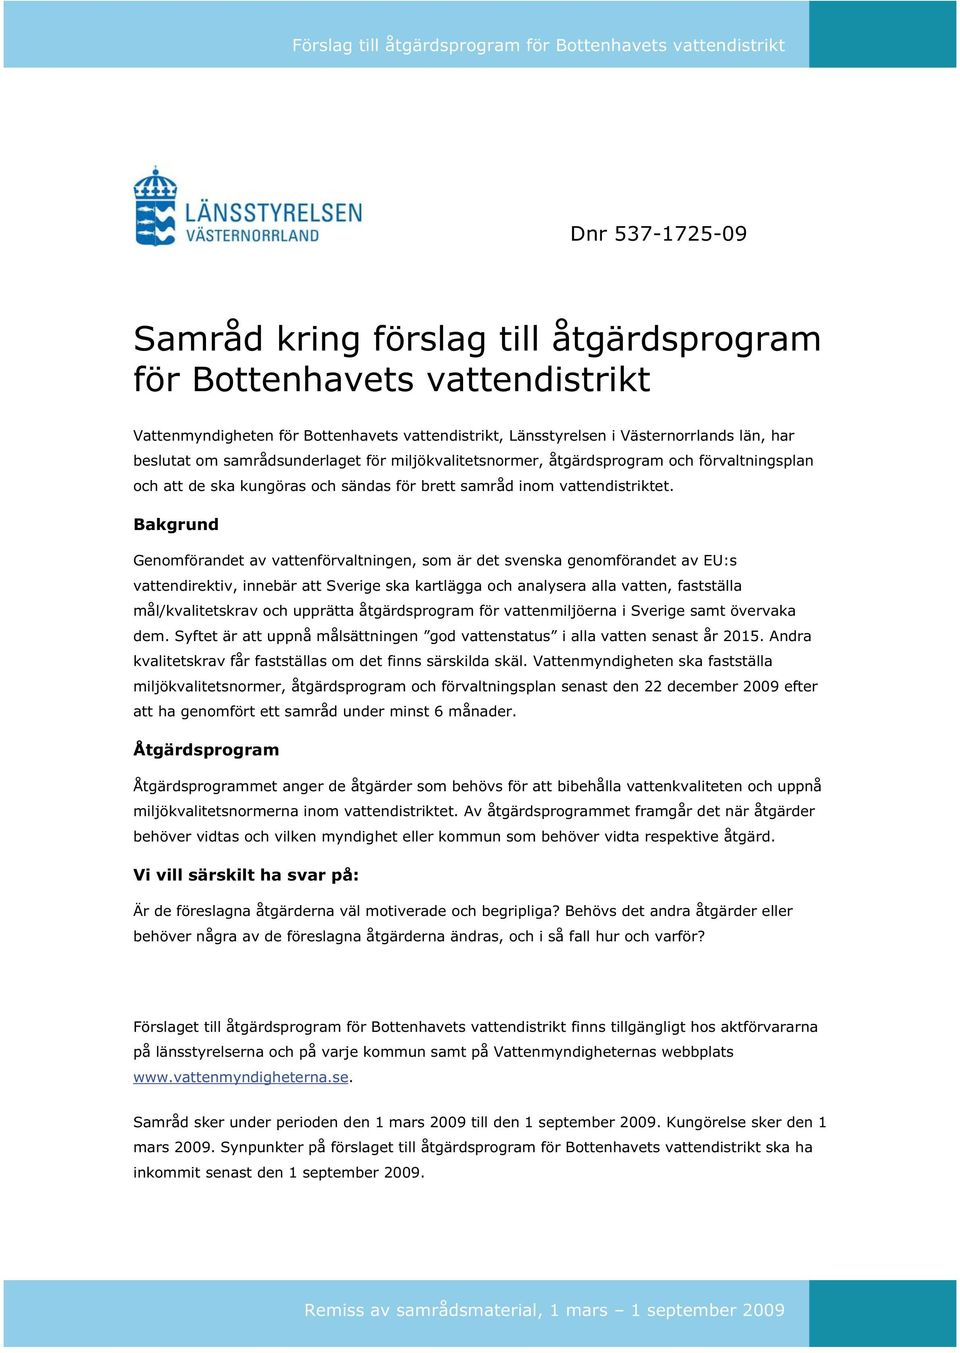 Bakgrund Genomförandet av vattenförvaltningen, som är det svenska genomförandet av EU:s vattendirektiv, innebär att Sverige ska kartlägga och analysera alla vatten, fastställa mål/kvalitetskrav och